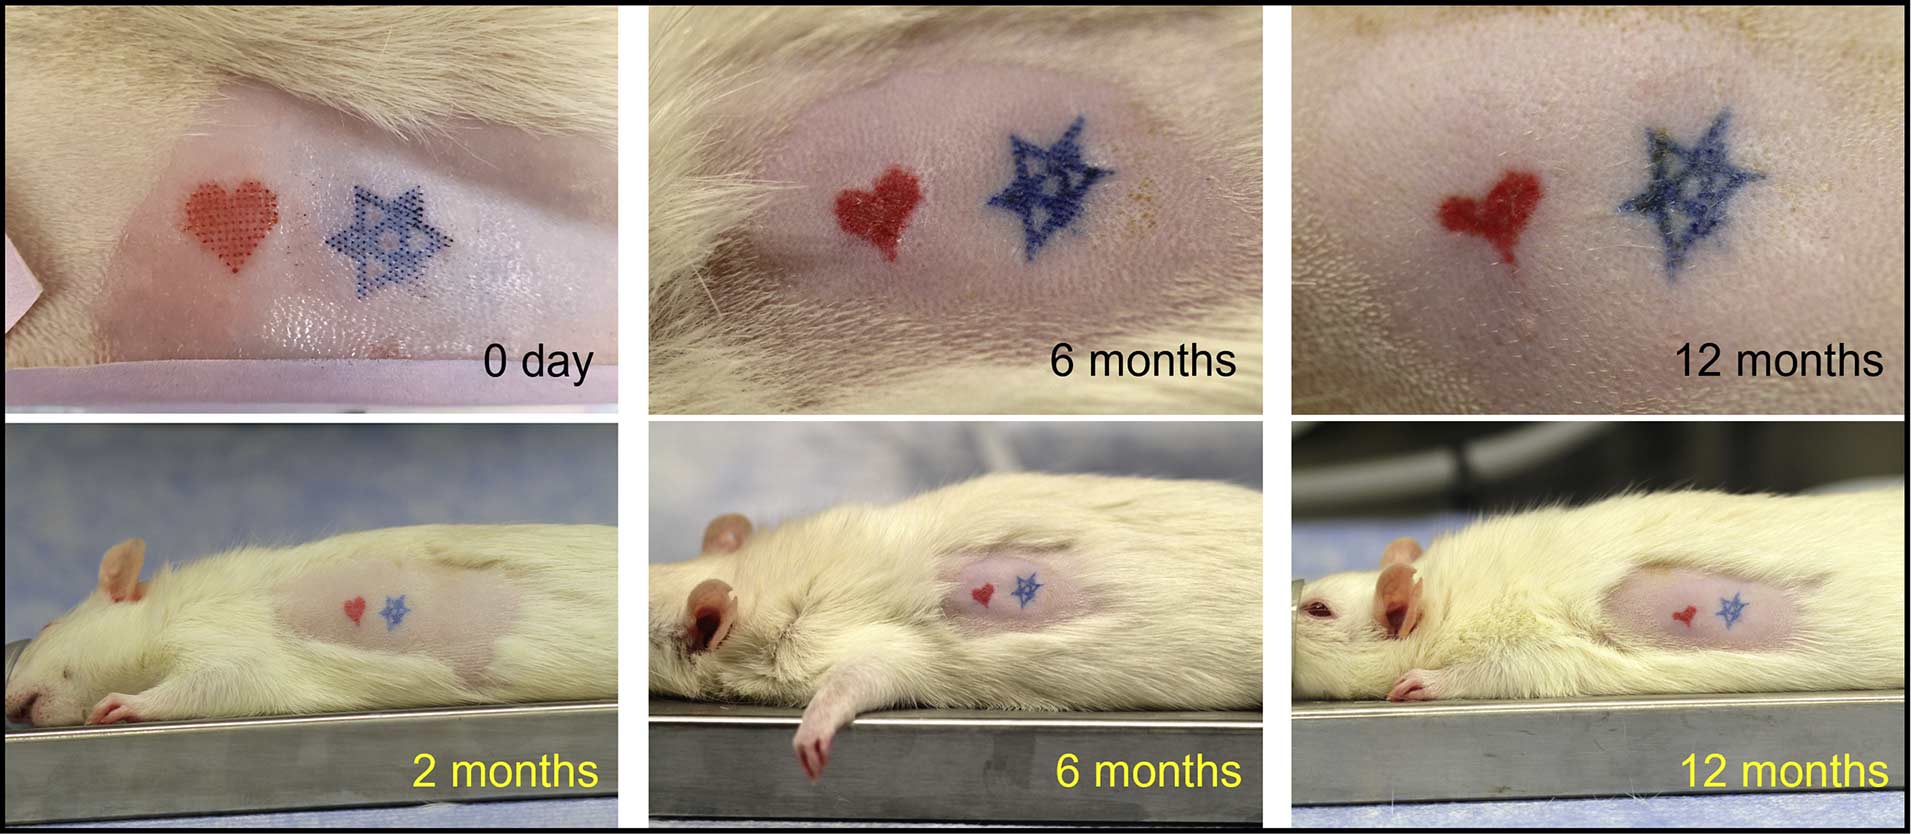 Das rote Herz und der blaue Stern wurden auf der rasierten Haut einer Ratte mittels Tattoo-Pflaster aufgebracht. Zu sehen ist die Entwicklung der Tätowierungen im Verlauf von 2 bis 12 Monaten. / Quelle: Li, S. et. al 2022, iScience 105014